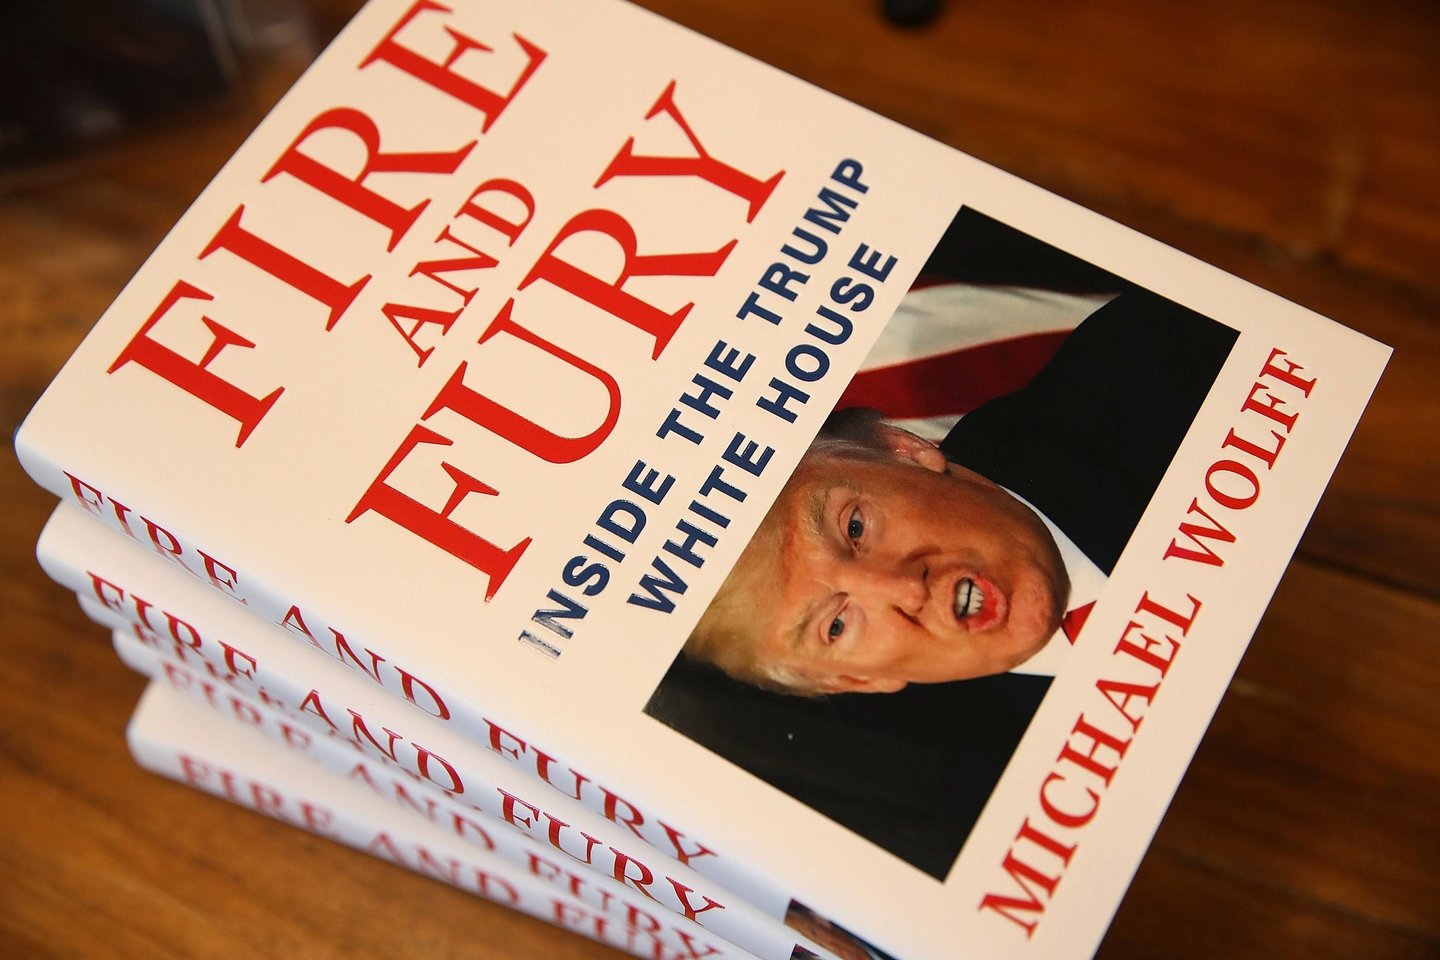 M.Wolffas knygoje atskleidė skandalingų detalių apie D.Trumpo įpročius ir jo artimiausius žmones bei šeimą, tačiau prezidentas viską neigia.<br>AFP/